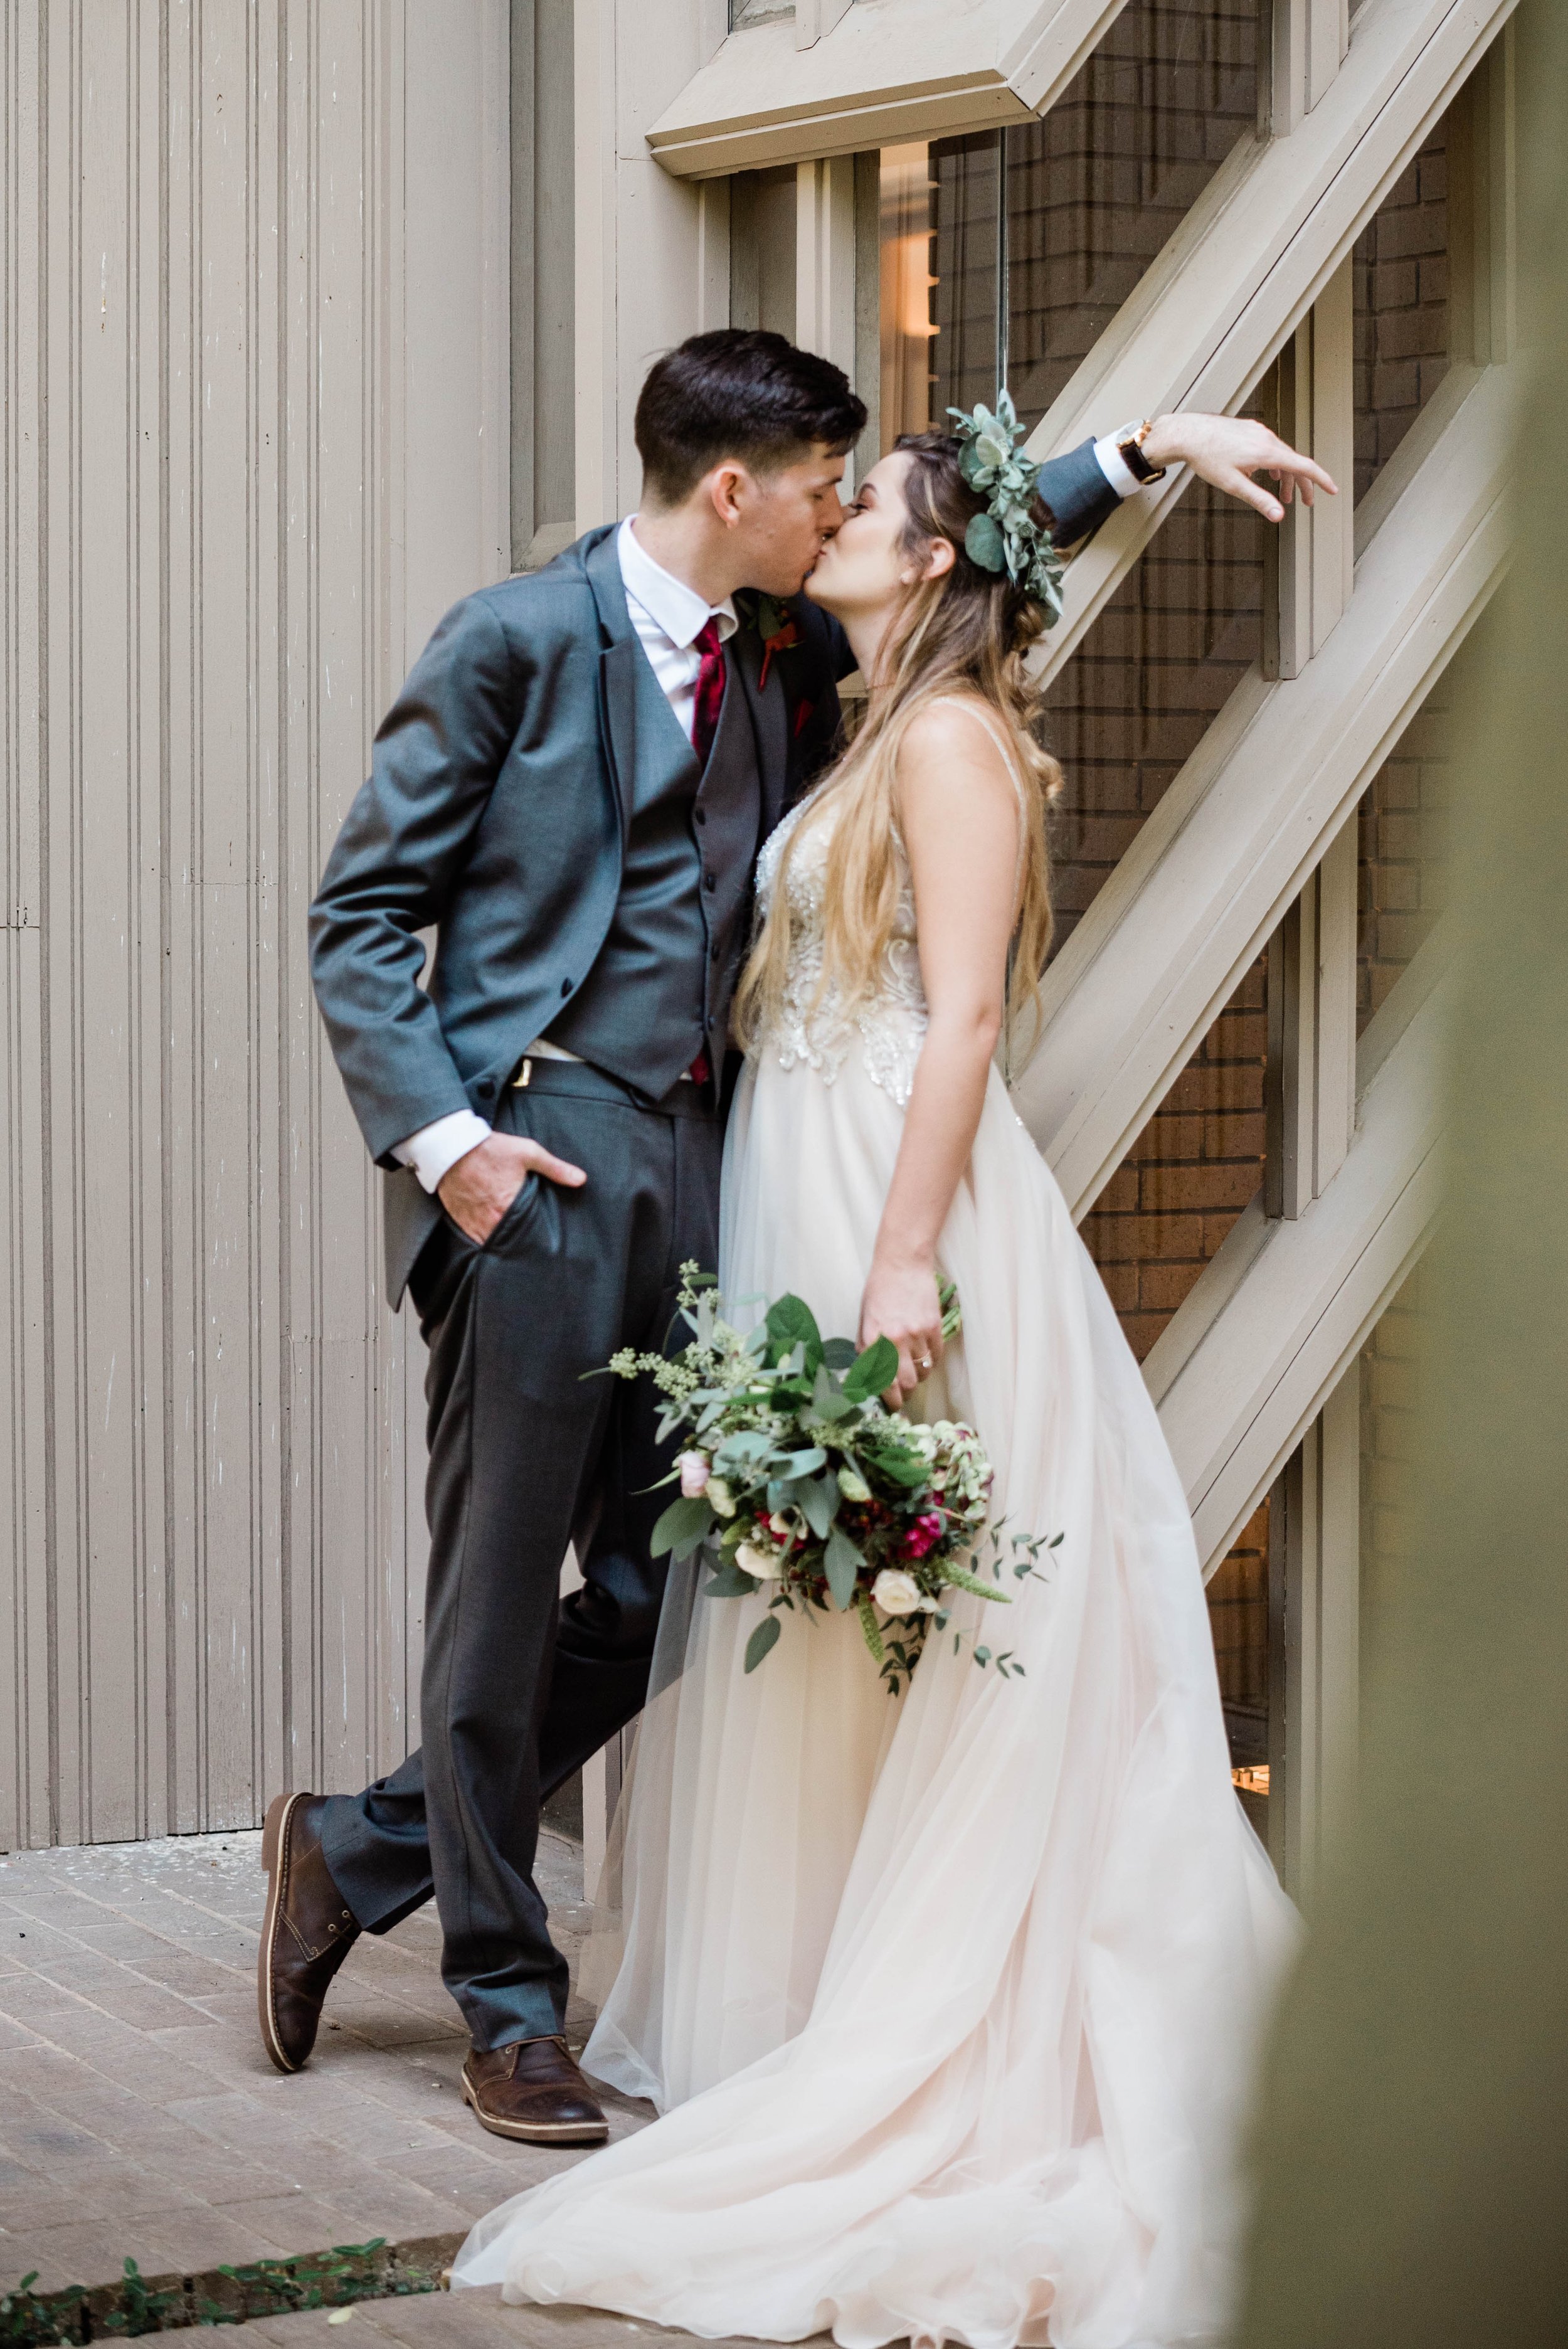 Kelsey & Tony Wedding Day Images (408).jpg